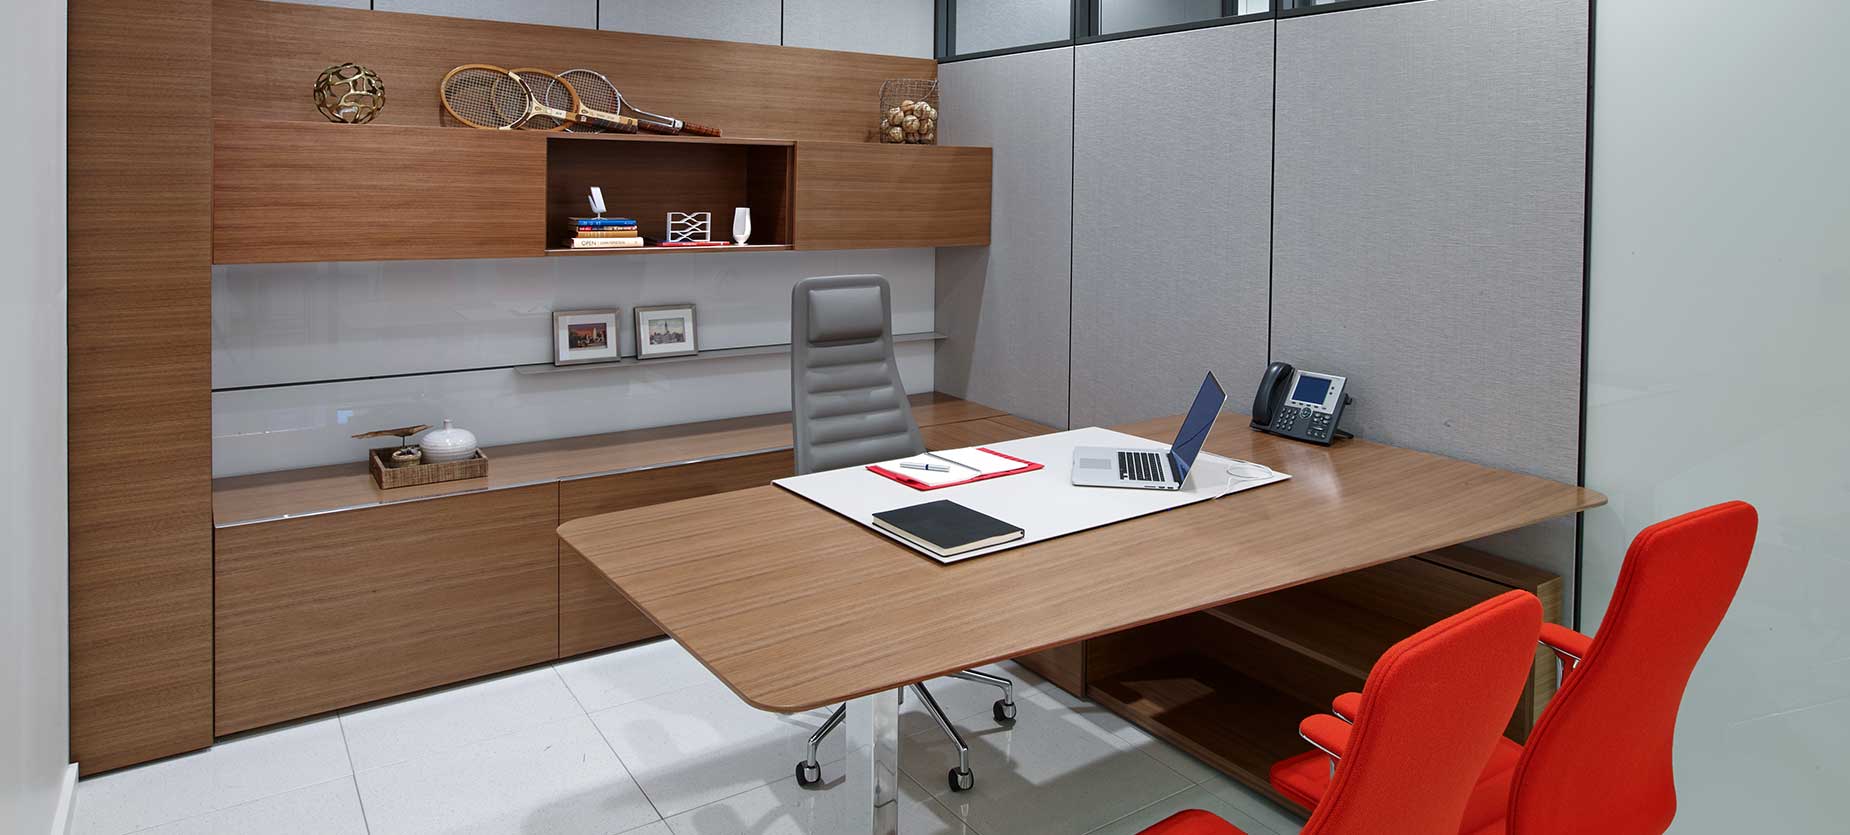 独立办公室套间营造出具有威望和功能丰富的外观，配置了高度可调节办公桌和内接电源的办公桌。座椅包括Lotus高背总裁扶手椅和Lotus中背座椅。